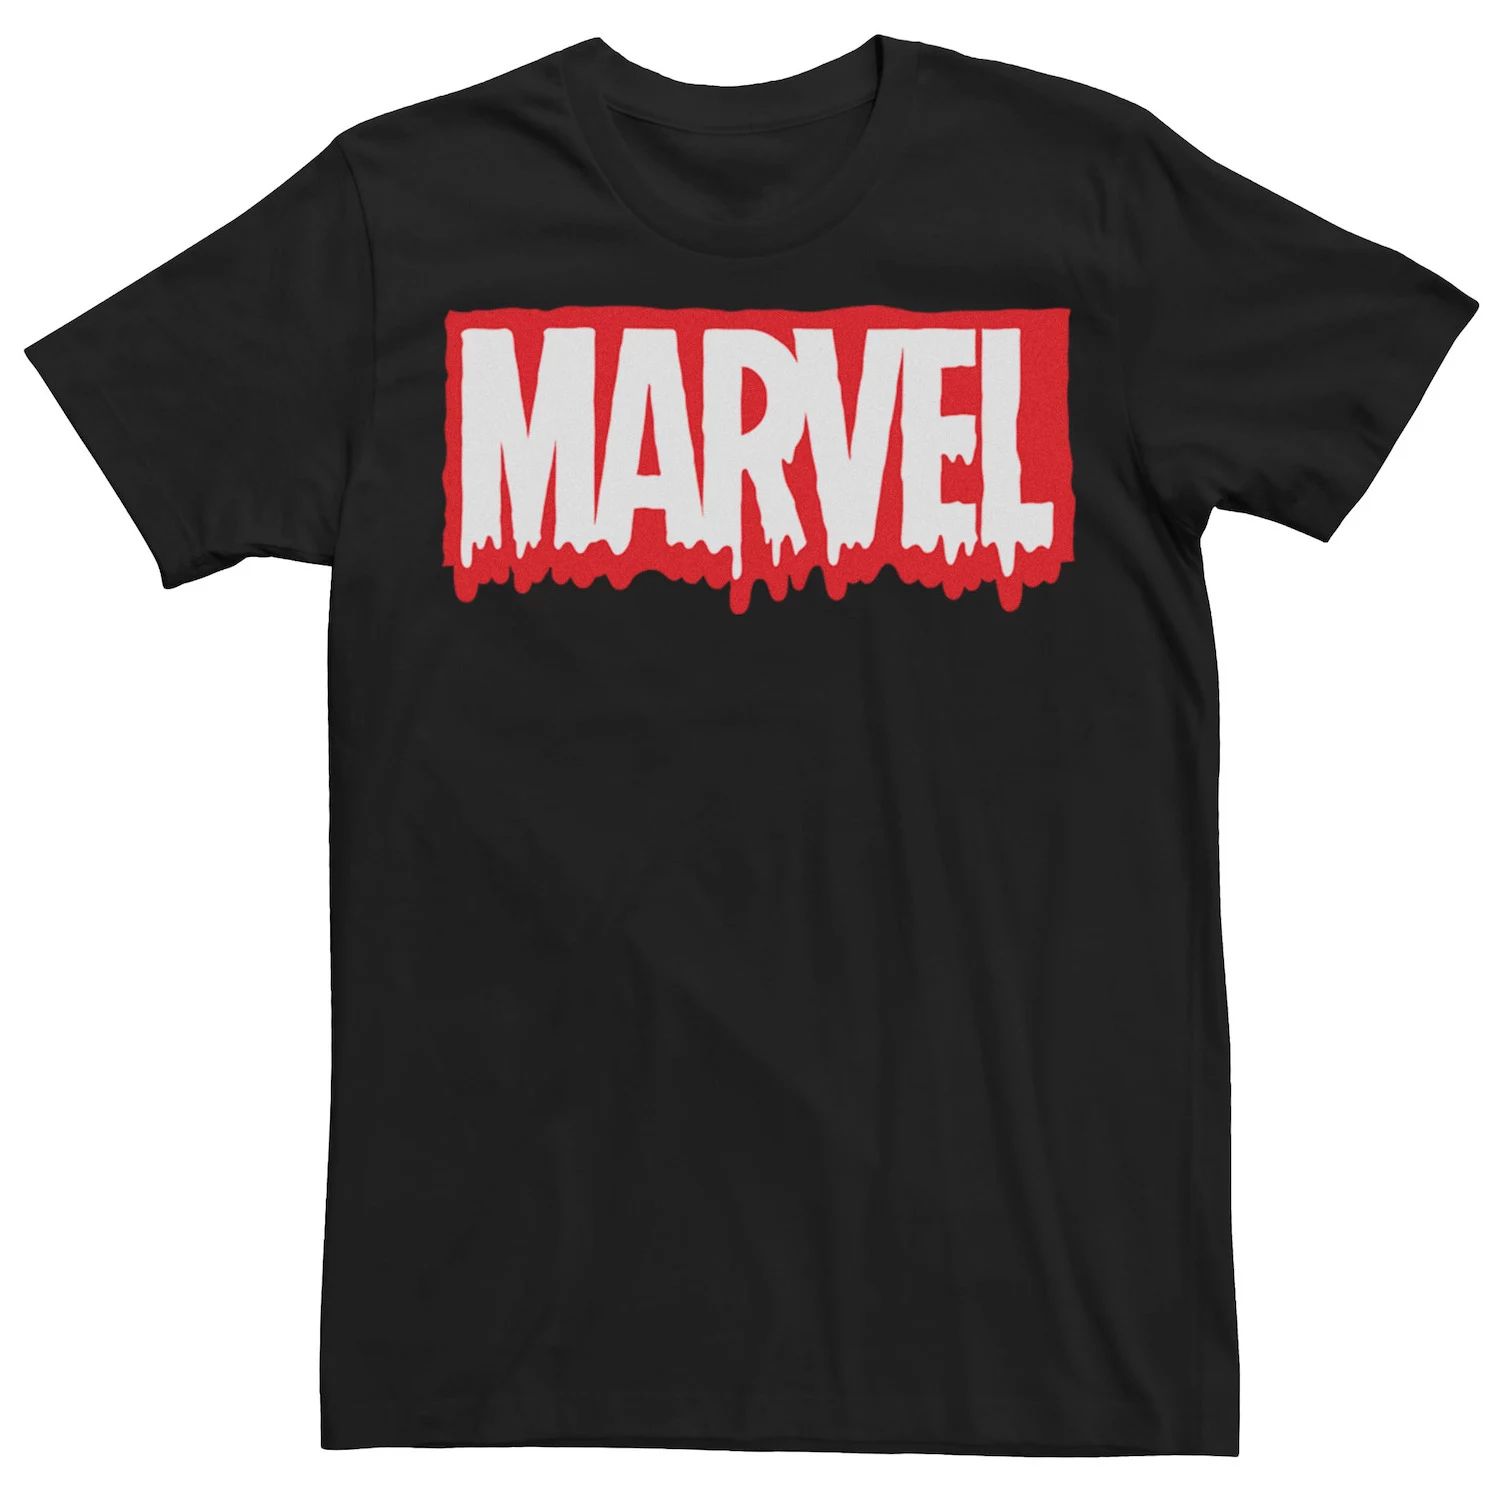 мужская классическая футболка с графическим логотипом marvel Мужская футболка с графическим логотипом Marvel Melting